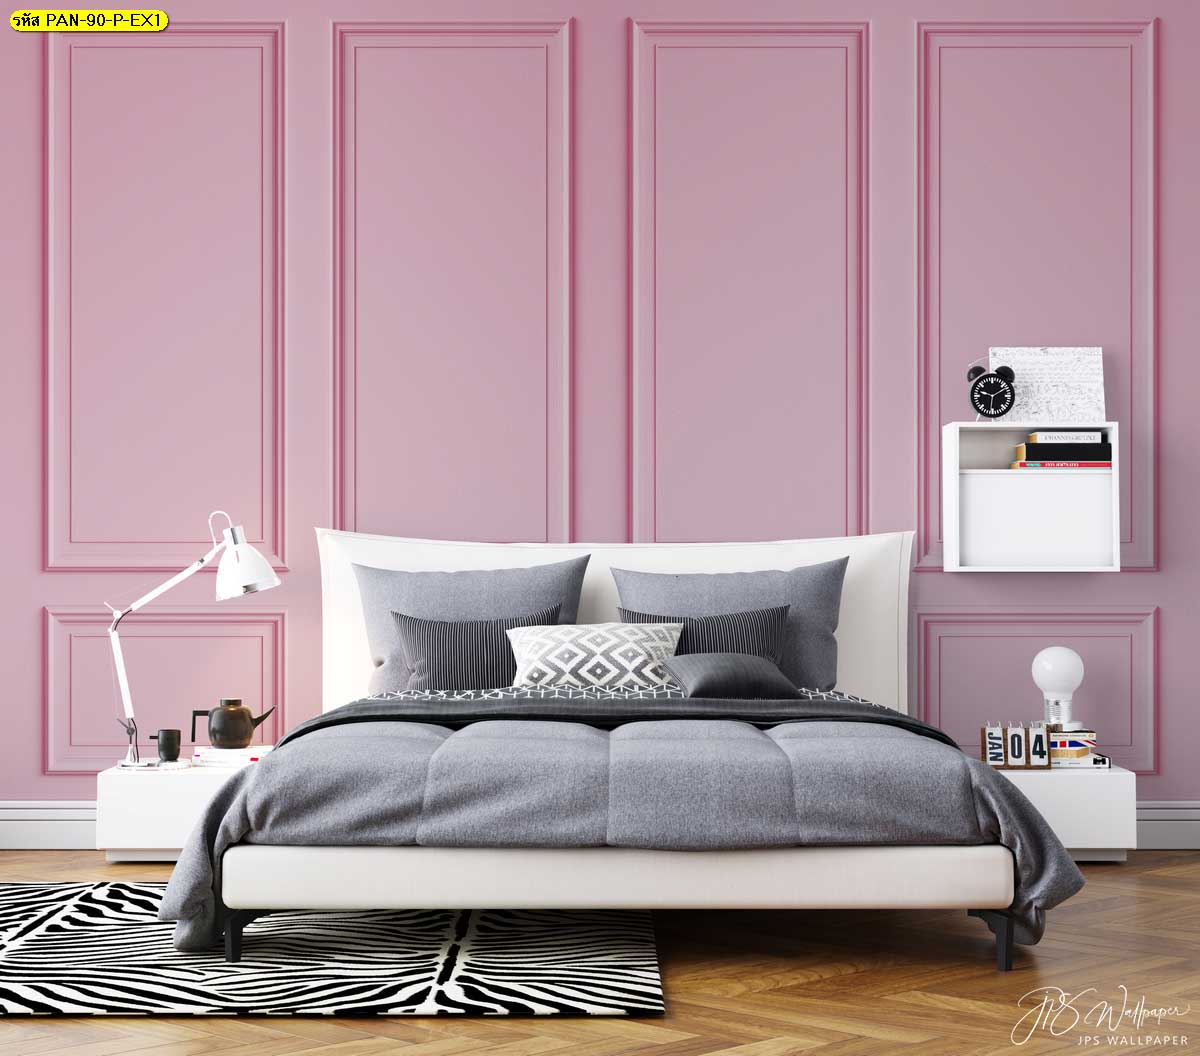 กรุผนังสีชมพูน่ารัก สดใส ที่จะทำให้ห้องนอนดูโปร่งสบายมากขึ้น